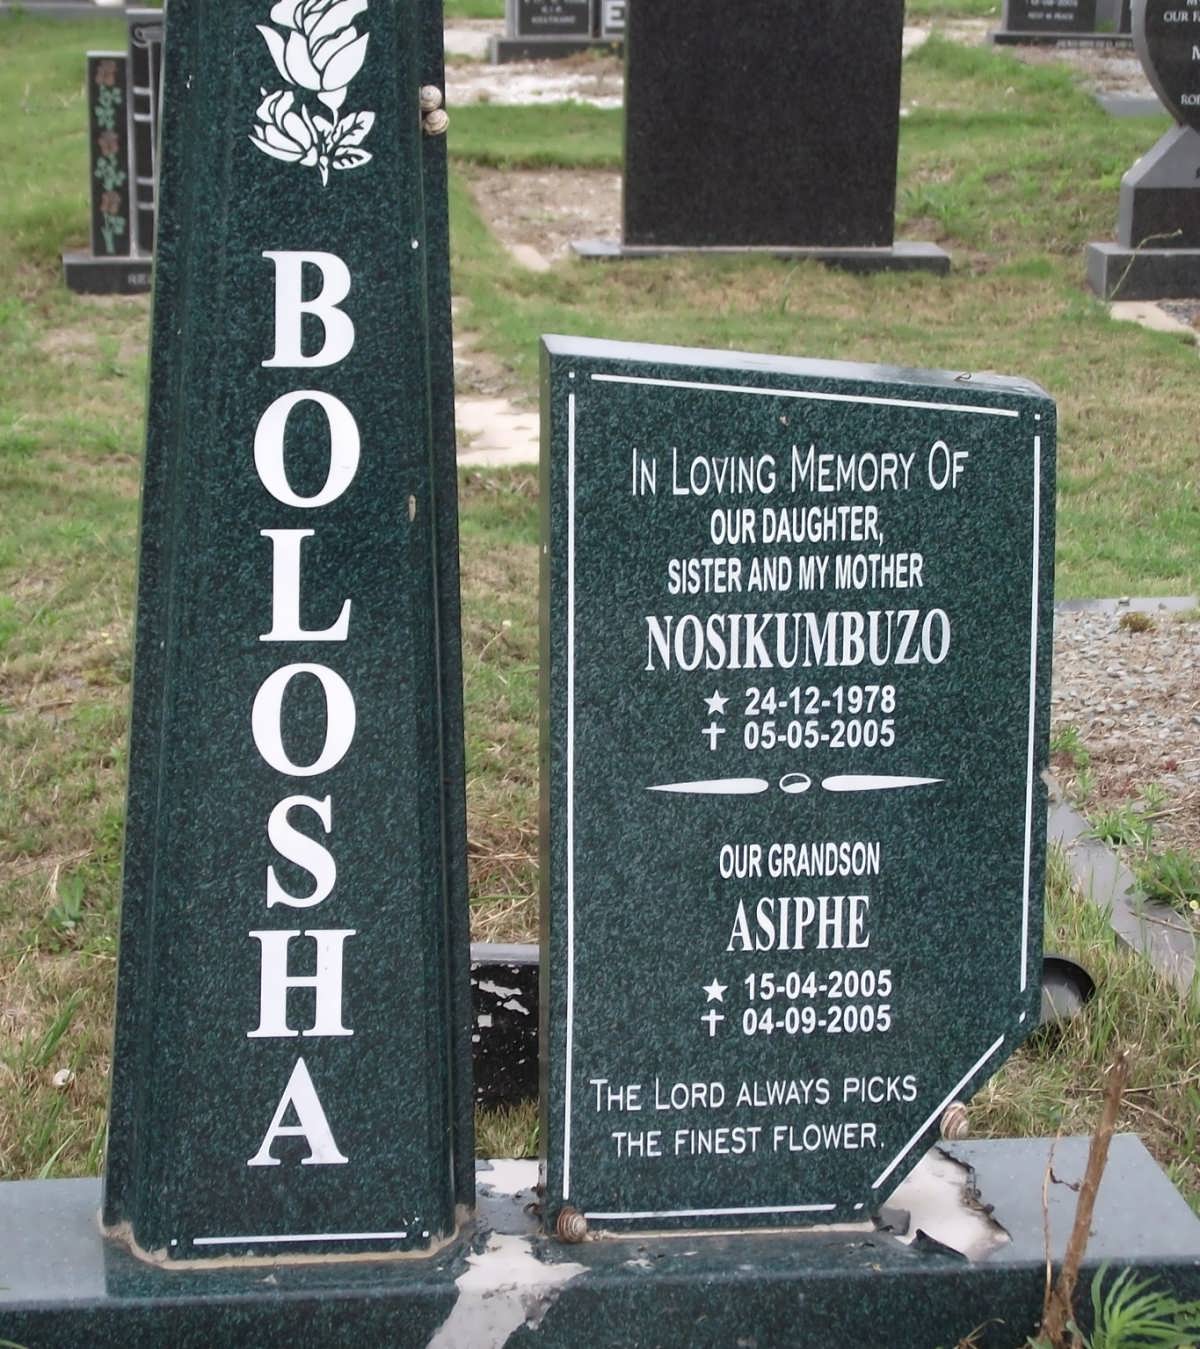 BOLOSHA Nosikumbuzo 1978-2005 :: BOLOSHA Asiphe 2005-2005